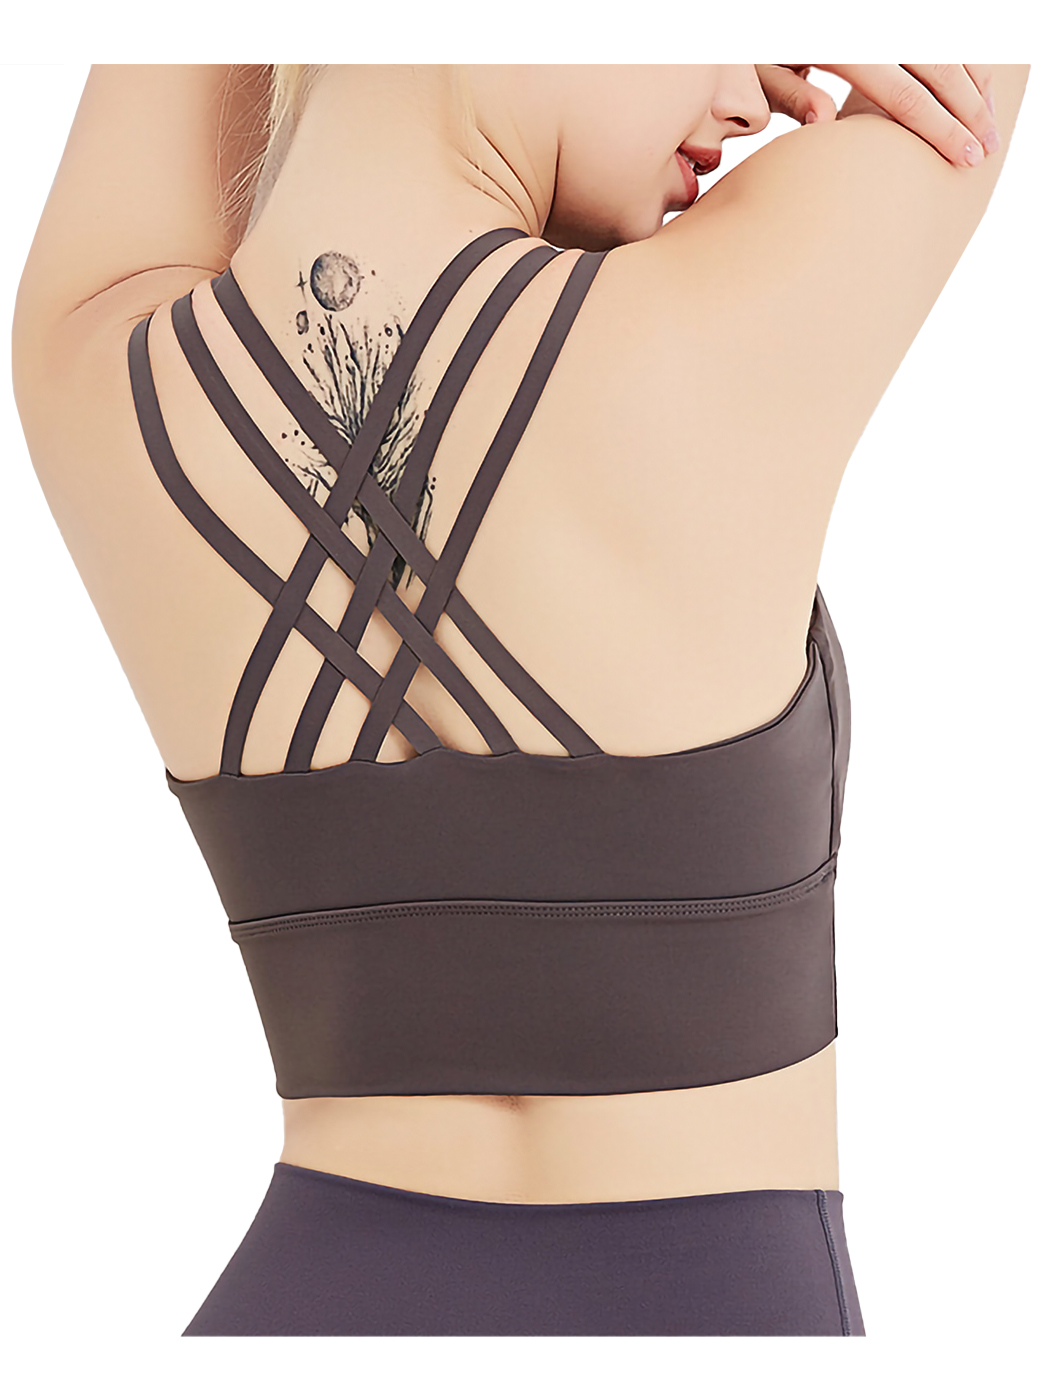 Buy NanoEdge Strappy Sports Bra for Women, Crisscross Back Medium